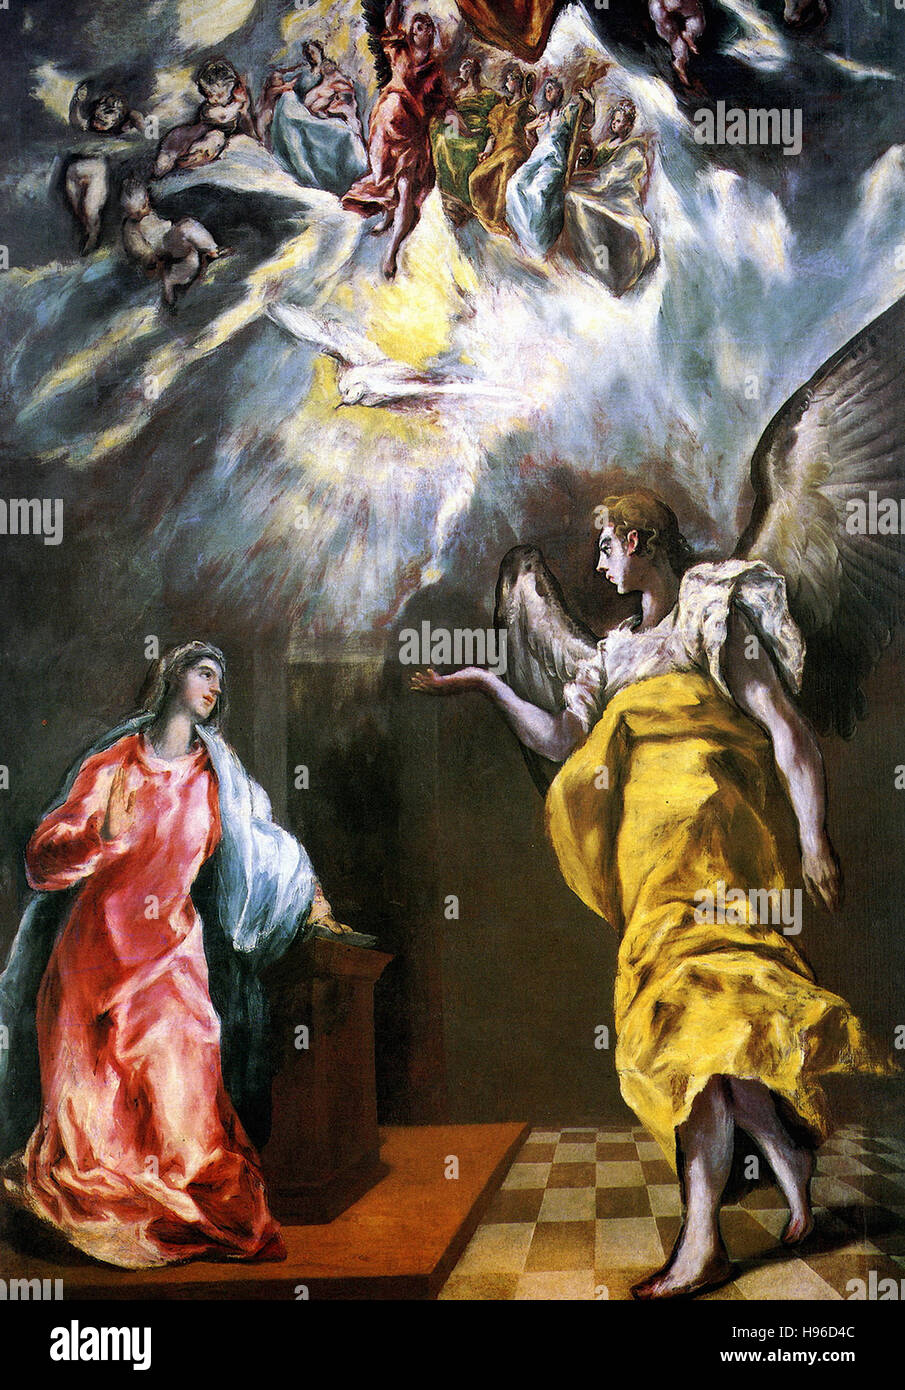 Domínikos Theotokópoulos a.k.a El Greco - The Annunciation Stock Photo